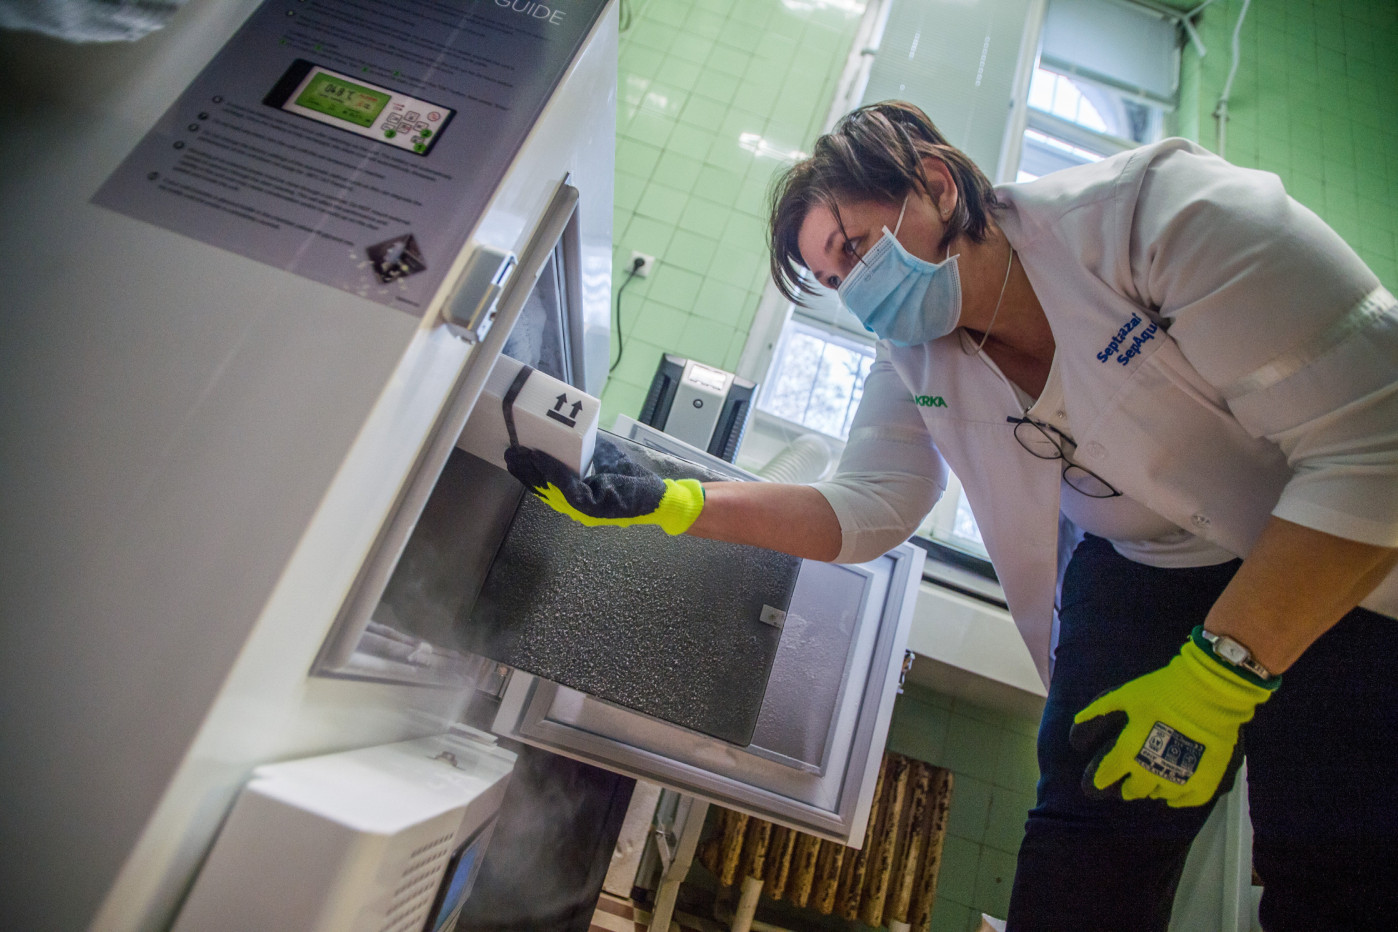 Palotás Mónika főgyógyszerész hűtőbe pakolja a koronavírus elleni oltóanyagot, a Pfizer-BioNTech vakcinát a Szent János Kórházban, ahol folytatódott az egészségügyi dolgozók oltása 2021. január 5-én